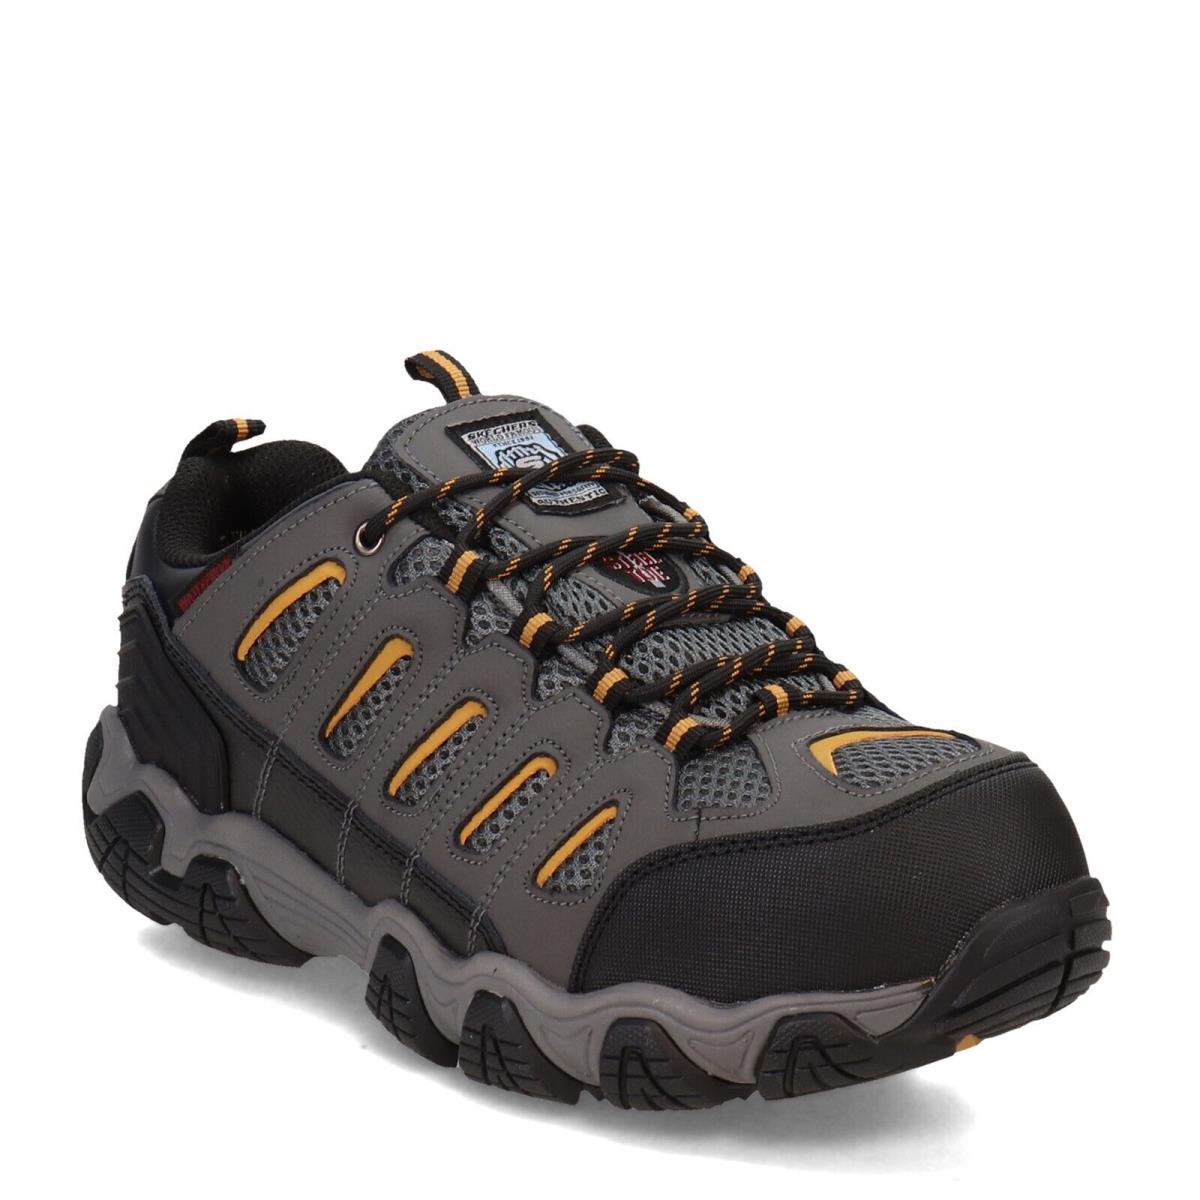 Skechers Men`s Blais Steel Toe Work Shoes Waterproof EH Safe 77051/DKGY - Black/Grey